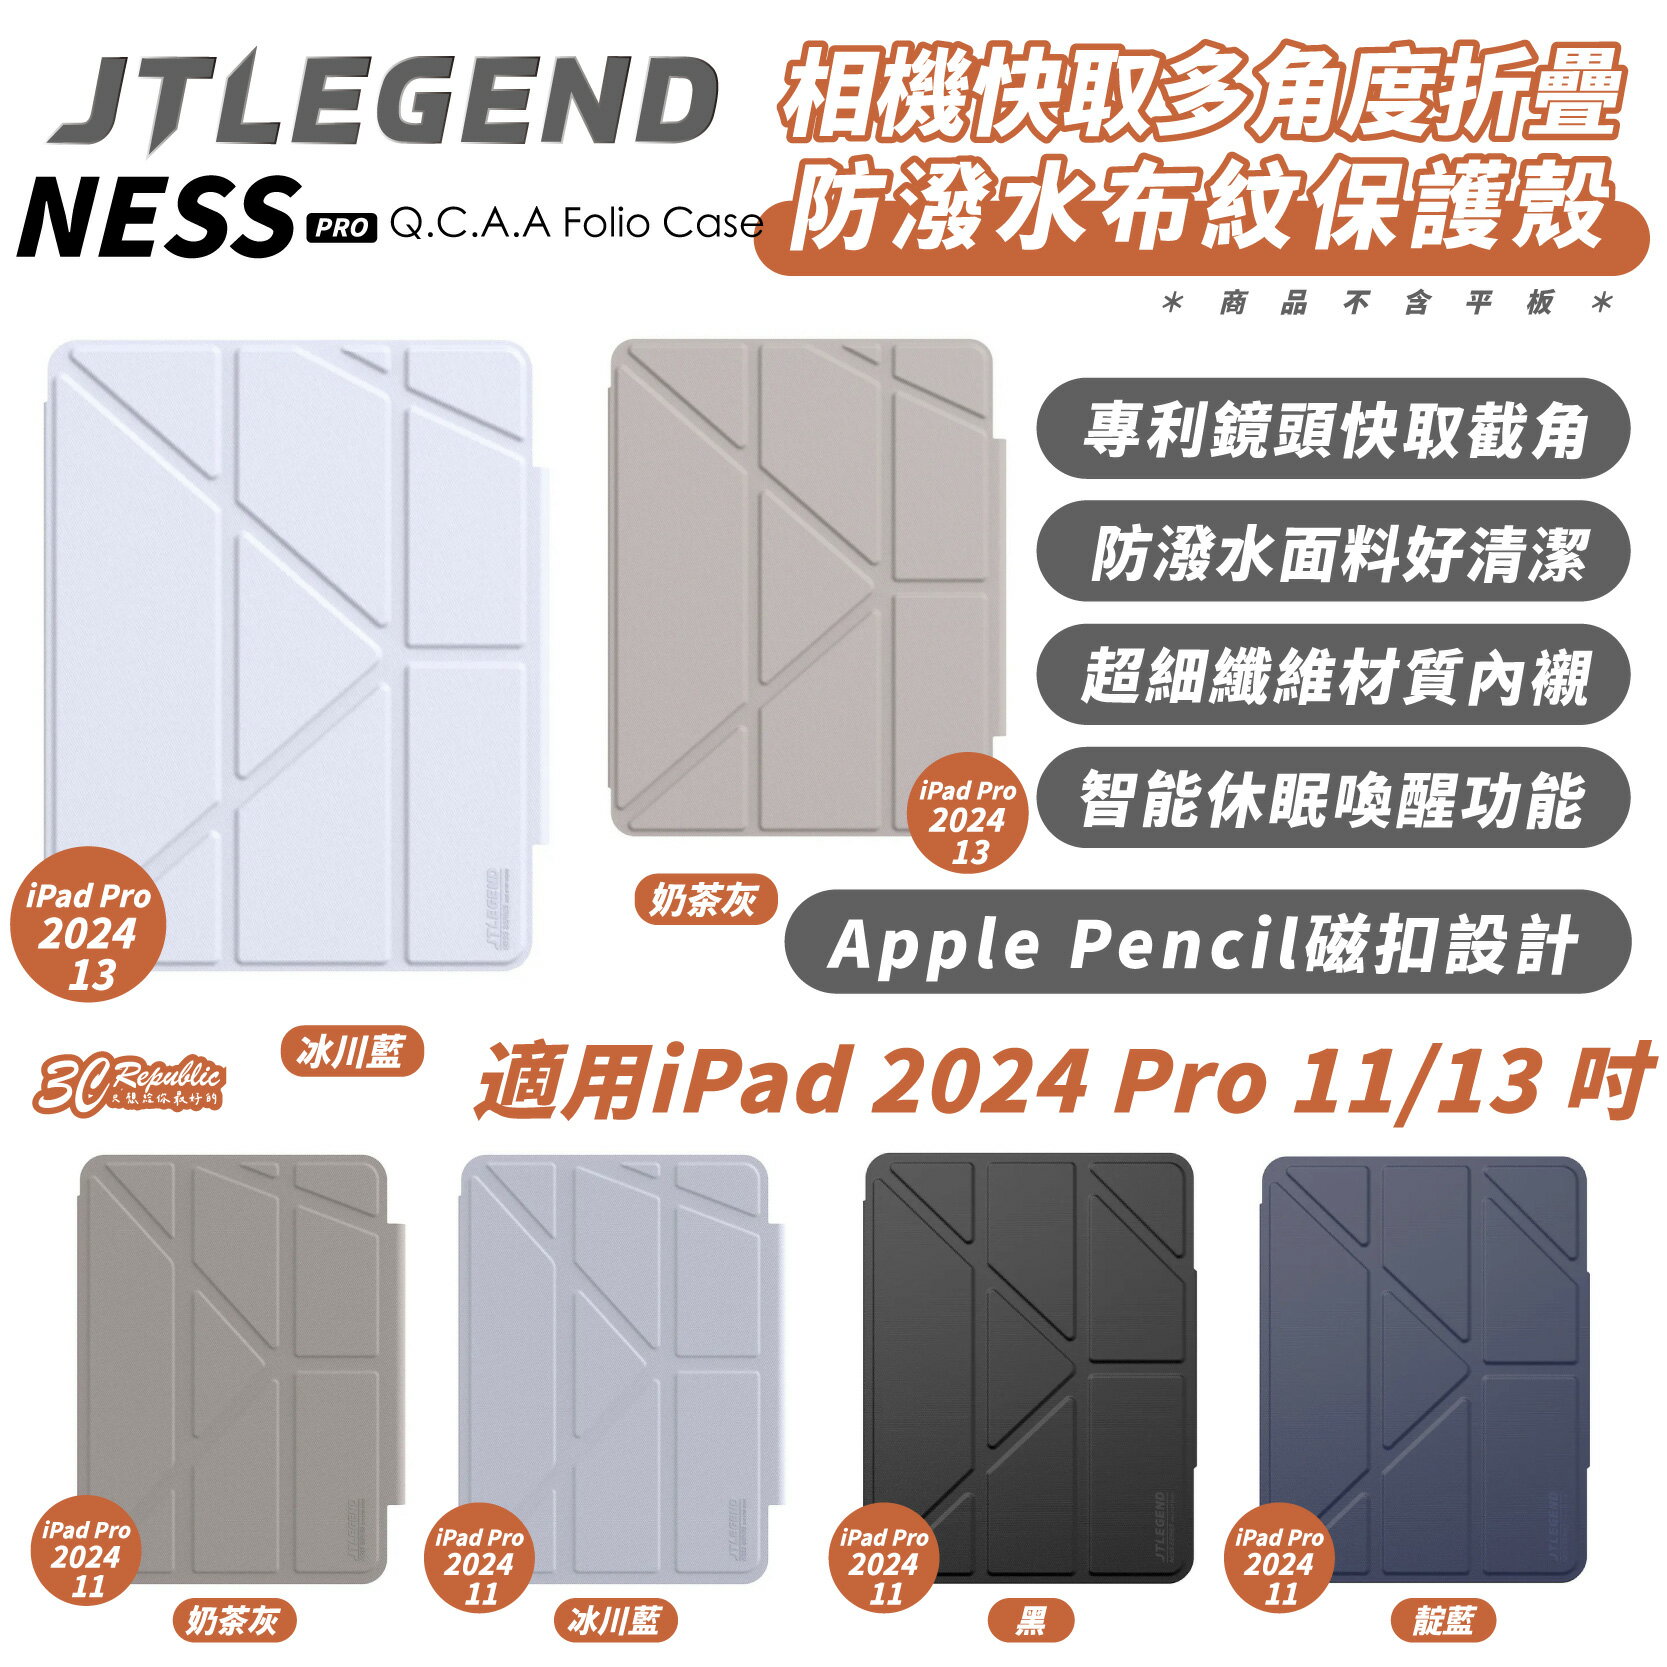 JTLEGEND JTL Ness Pro 平板 保護殼 保護套 皮套 適 iPad Pro 2024 11 13 吋【APP下單8%點數回饋】